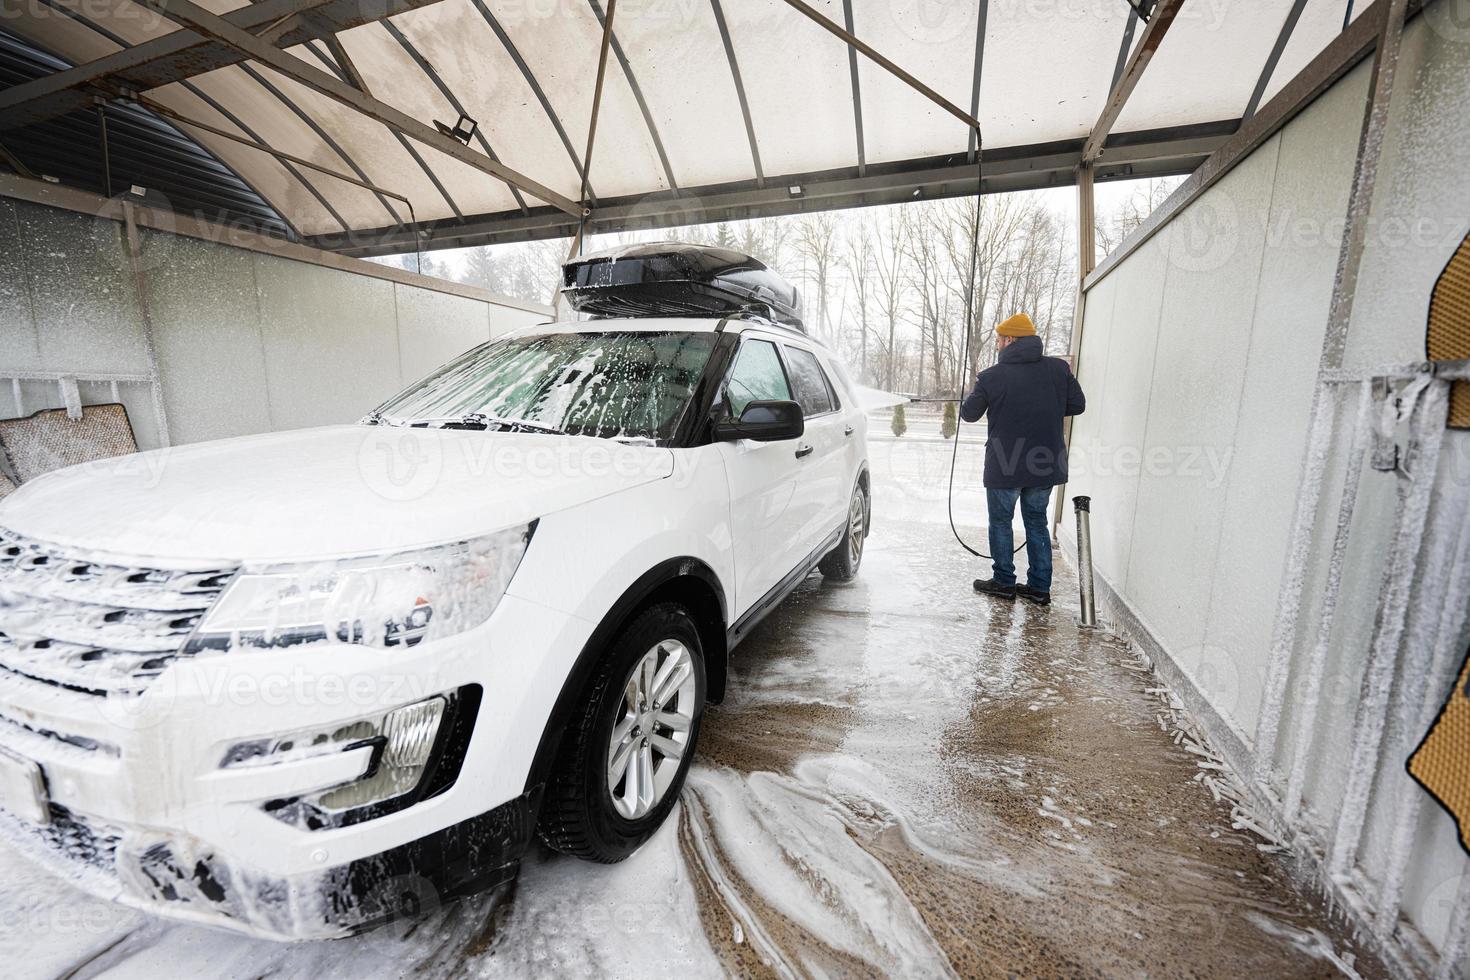 hombre lavando agua a alta presión coche suv americano con portaequipajes en autoservicio de lavado en clima frío. foto